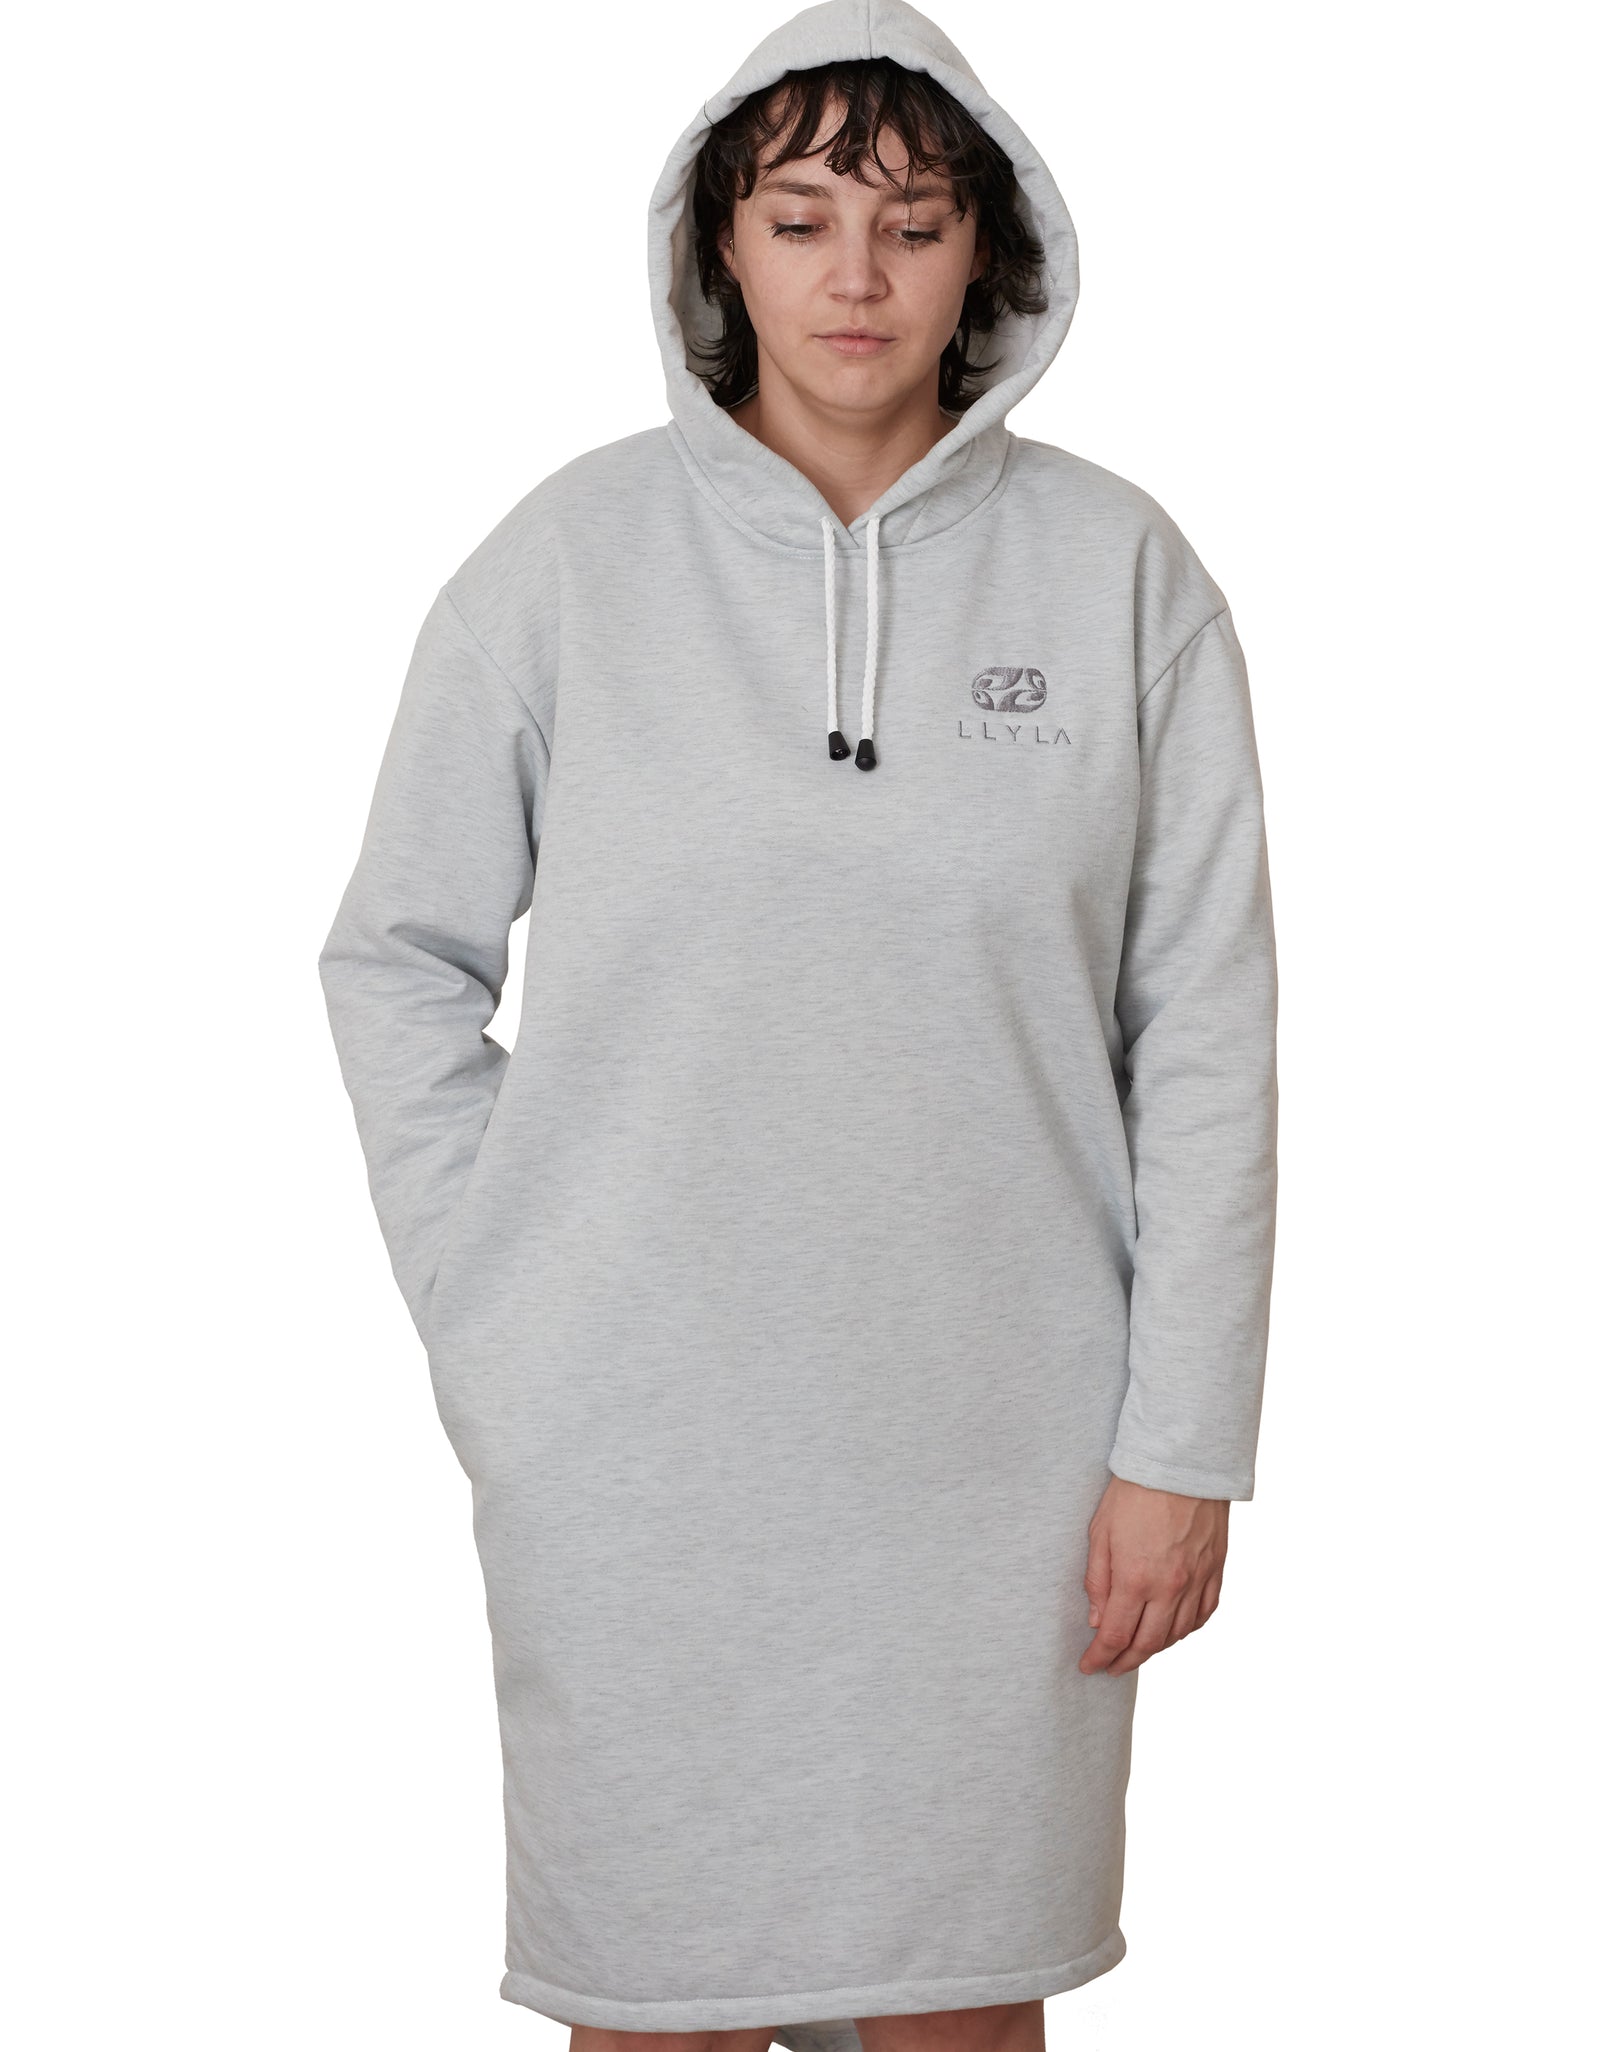 LLYLA Hooded Sweatshirt Dress with Side Pockets – LLYLΛ